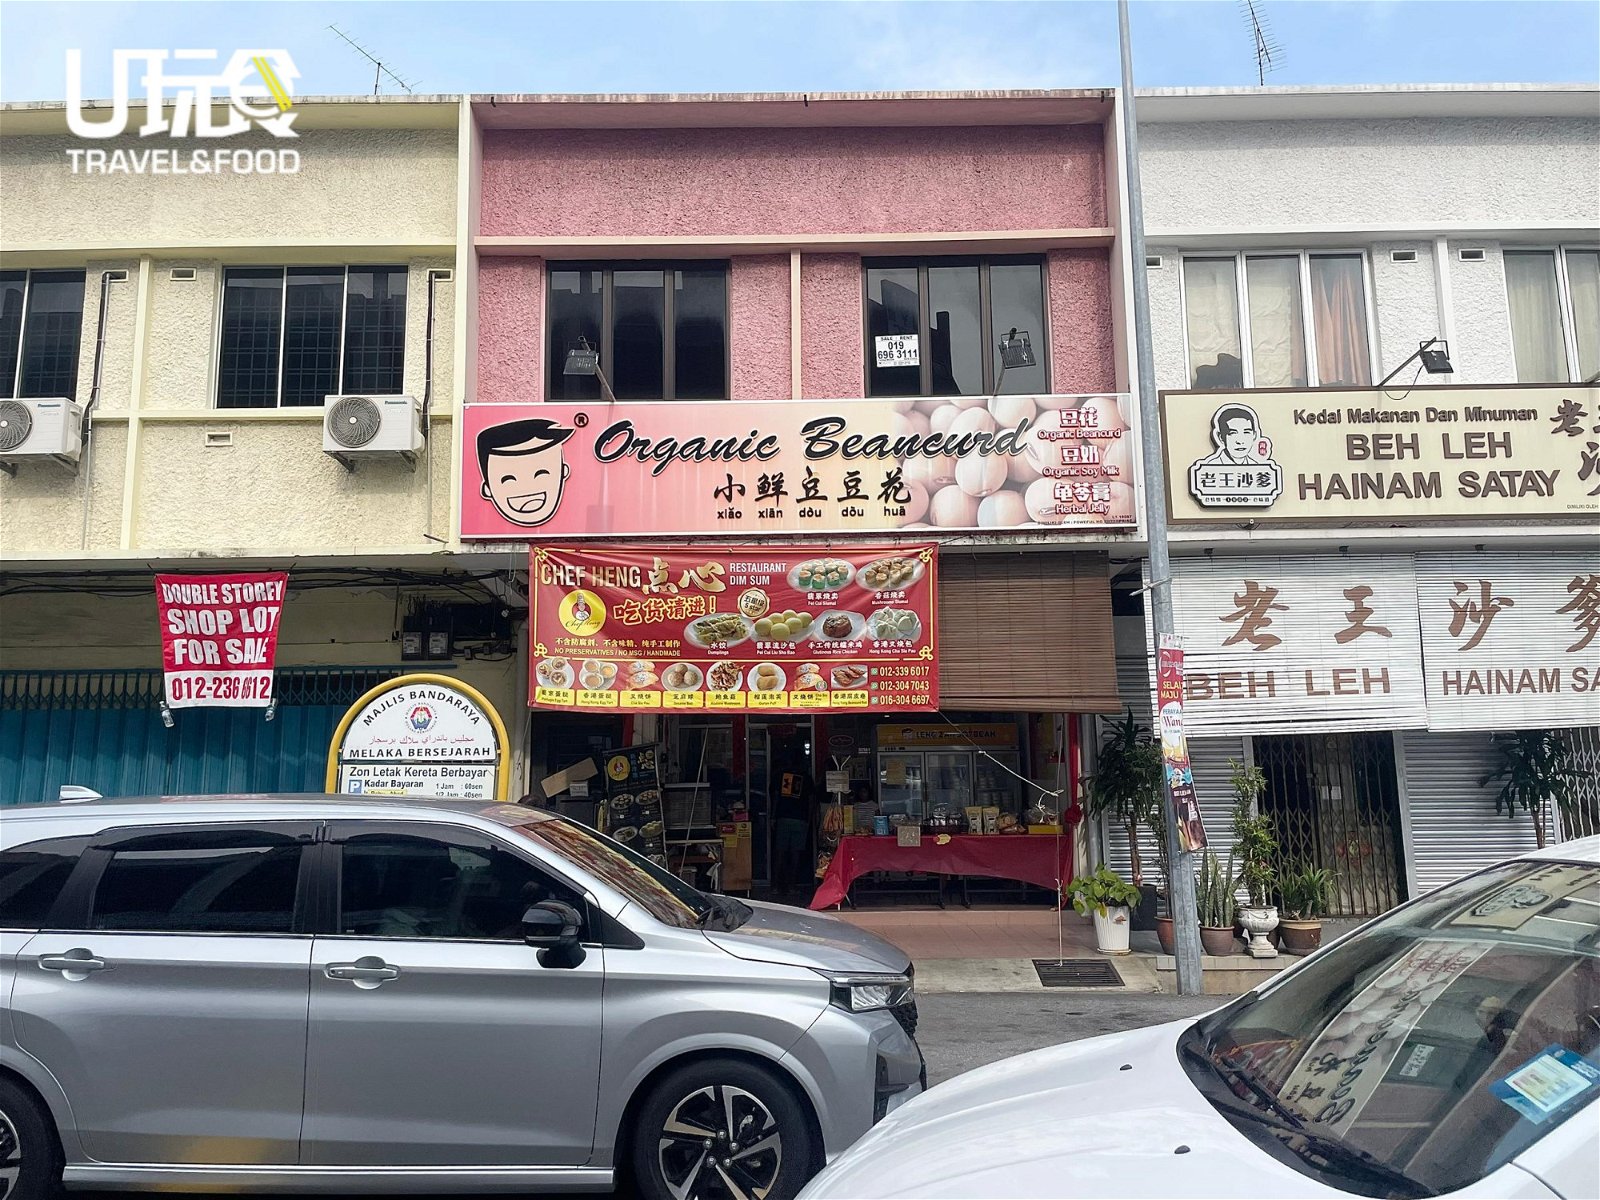 位于马六甲市区峇章的“小鲜豆豆花”专卖店“内有乾坤”，除了贩售新鲜豆奶、豆花和龟苓膏之外，更隐藏著一间港式点心店。